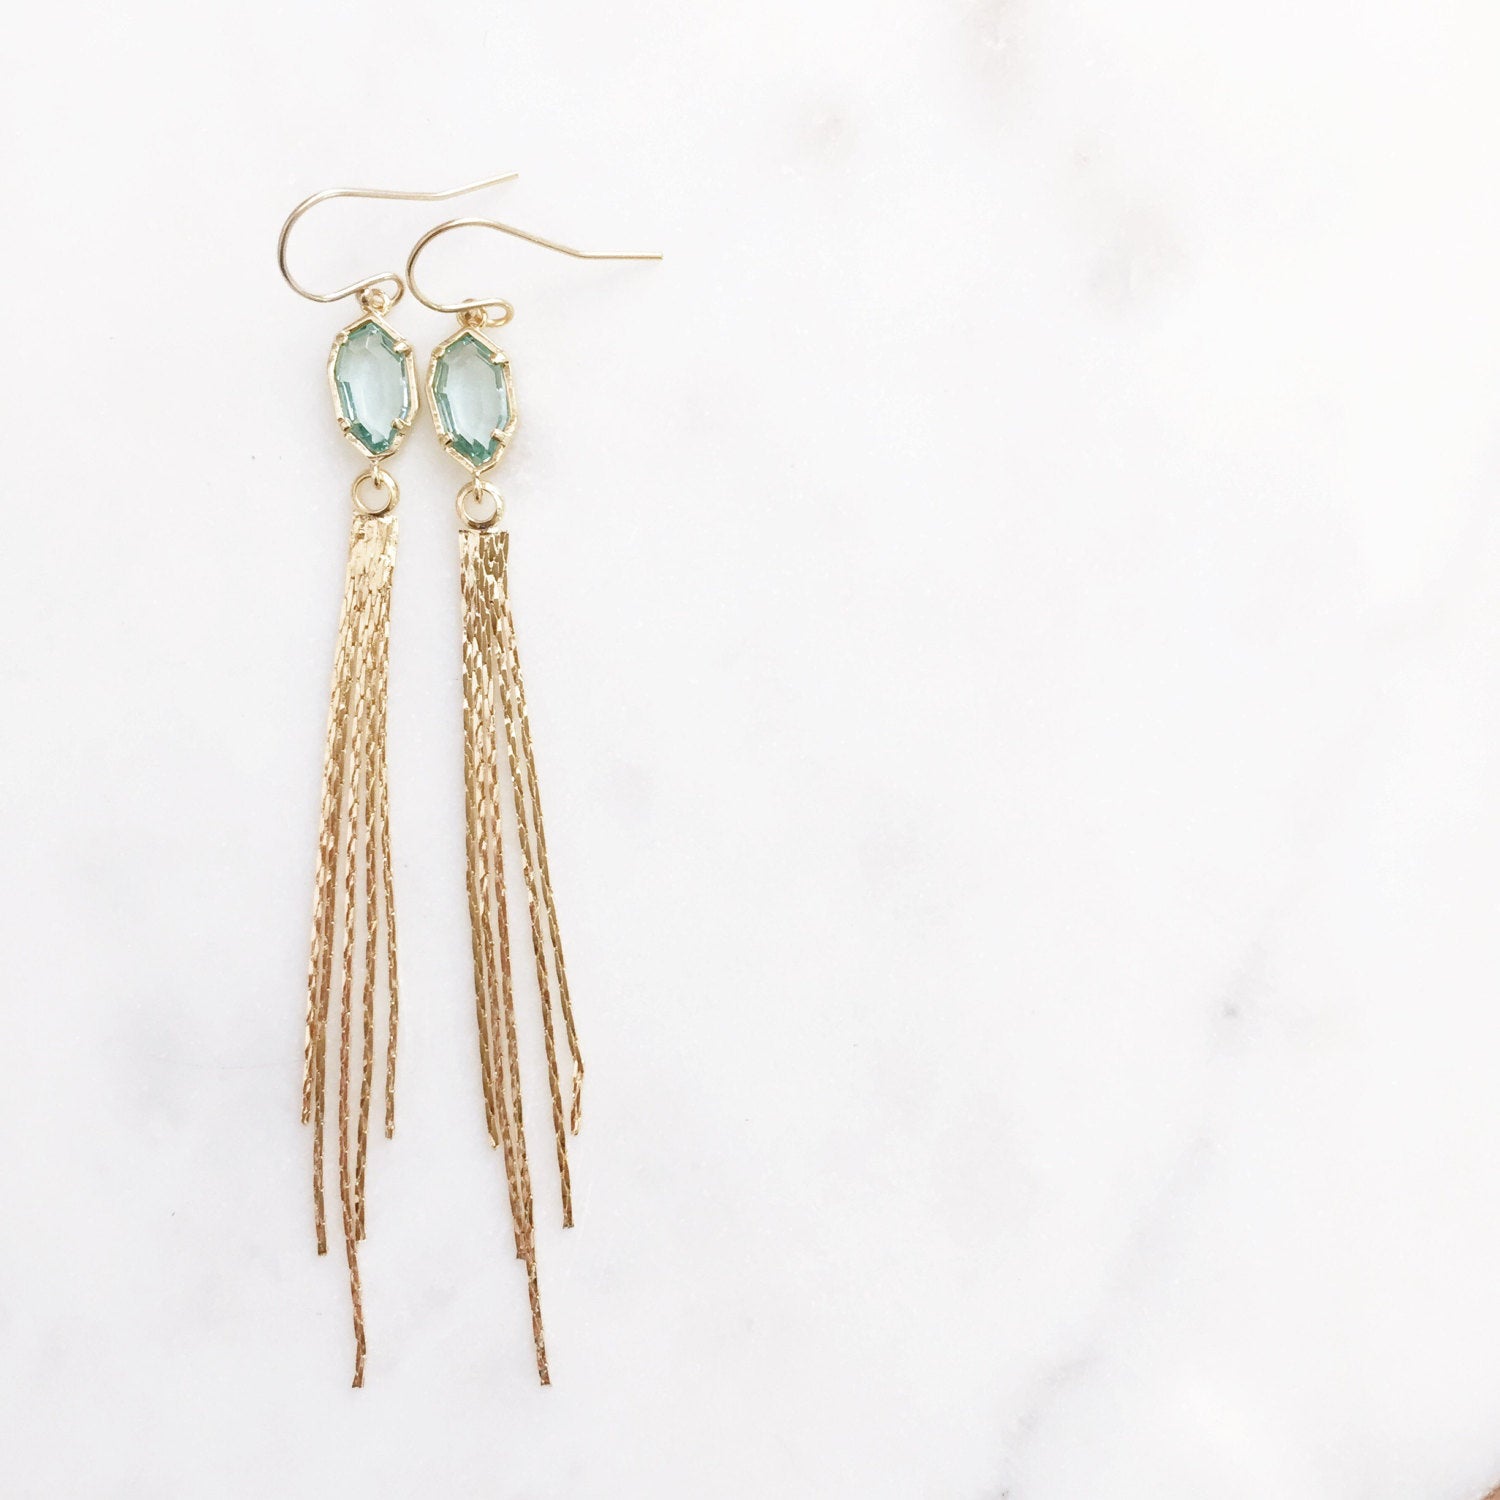 TALIA | Gold Tassel Earrings | Long Gold Tassel Earrings | Sea Green Stone + Tassel Earrings | Gold Dangle Tassel Earrings | Stone + Tassel